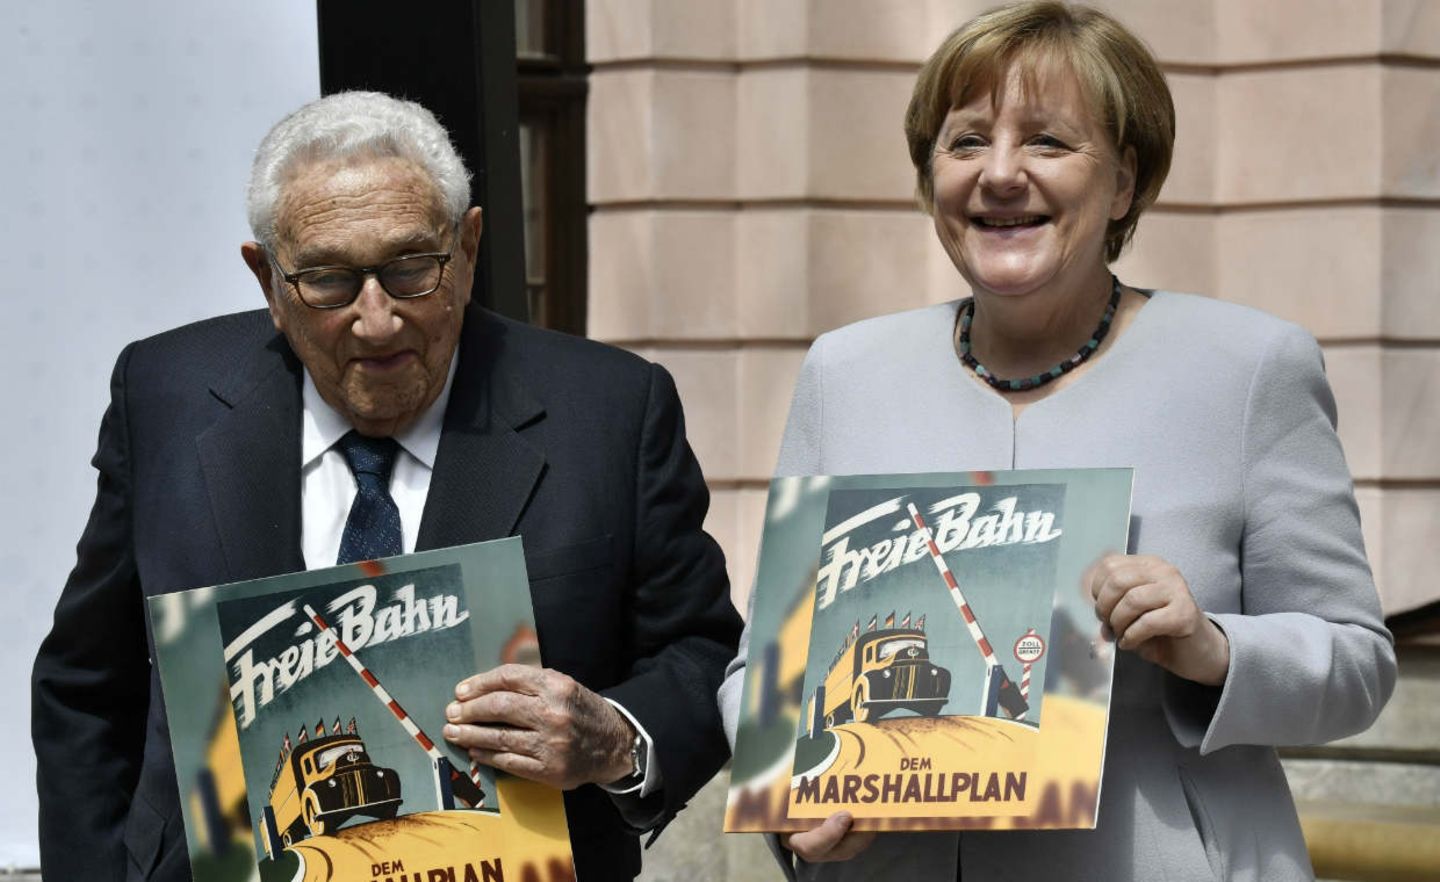 Erfolgsgeschichte: Im Juni feierten Kanzlerin Angela Merkel und der frühere US-Außenminister Henry Kissinger 70 Jahre Marshallplan